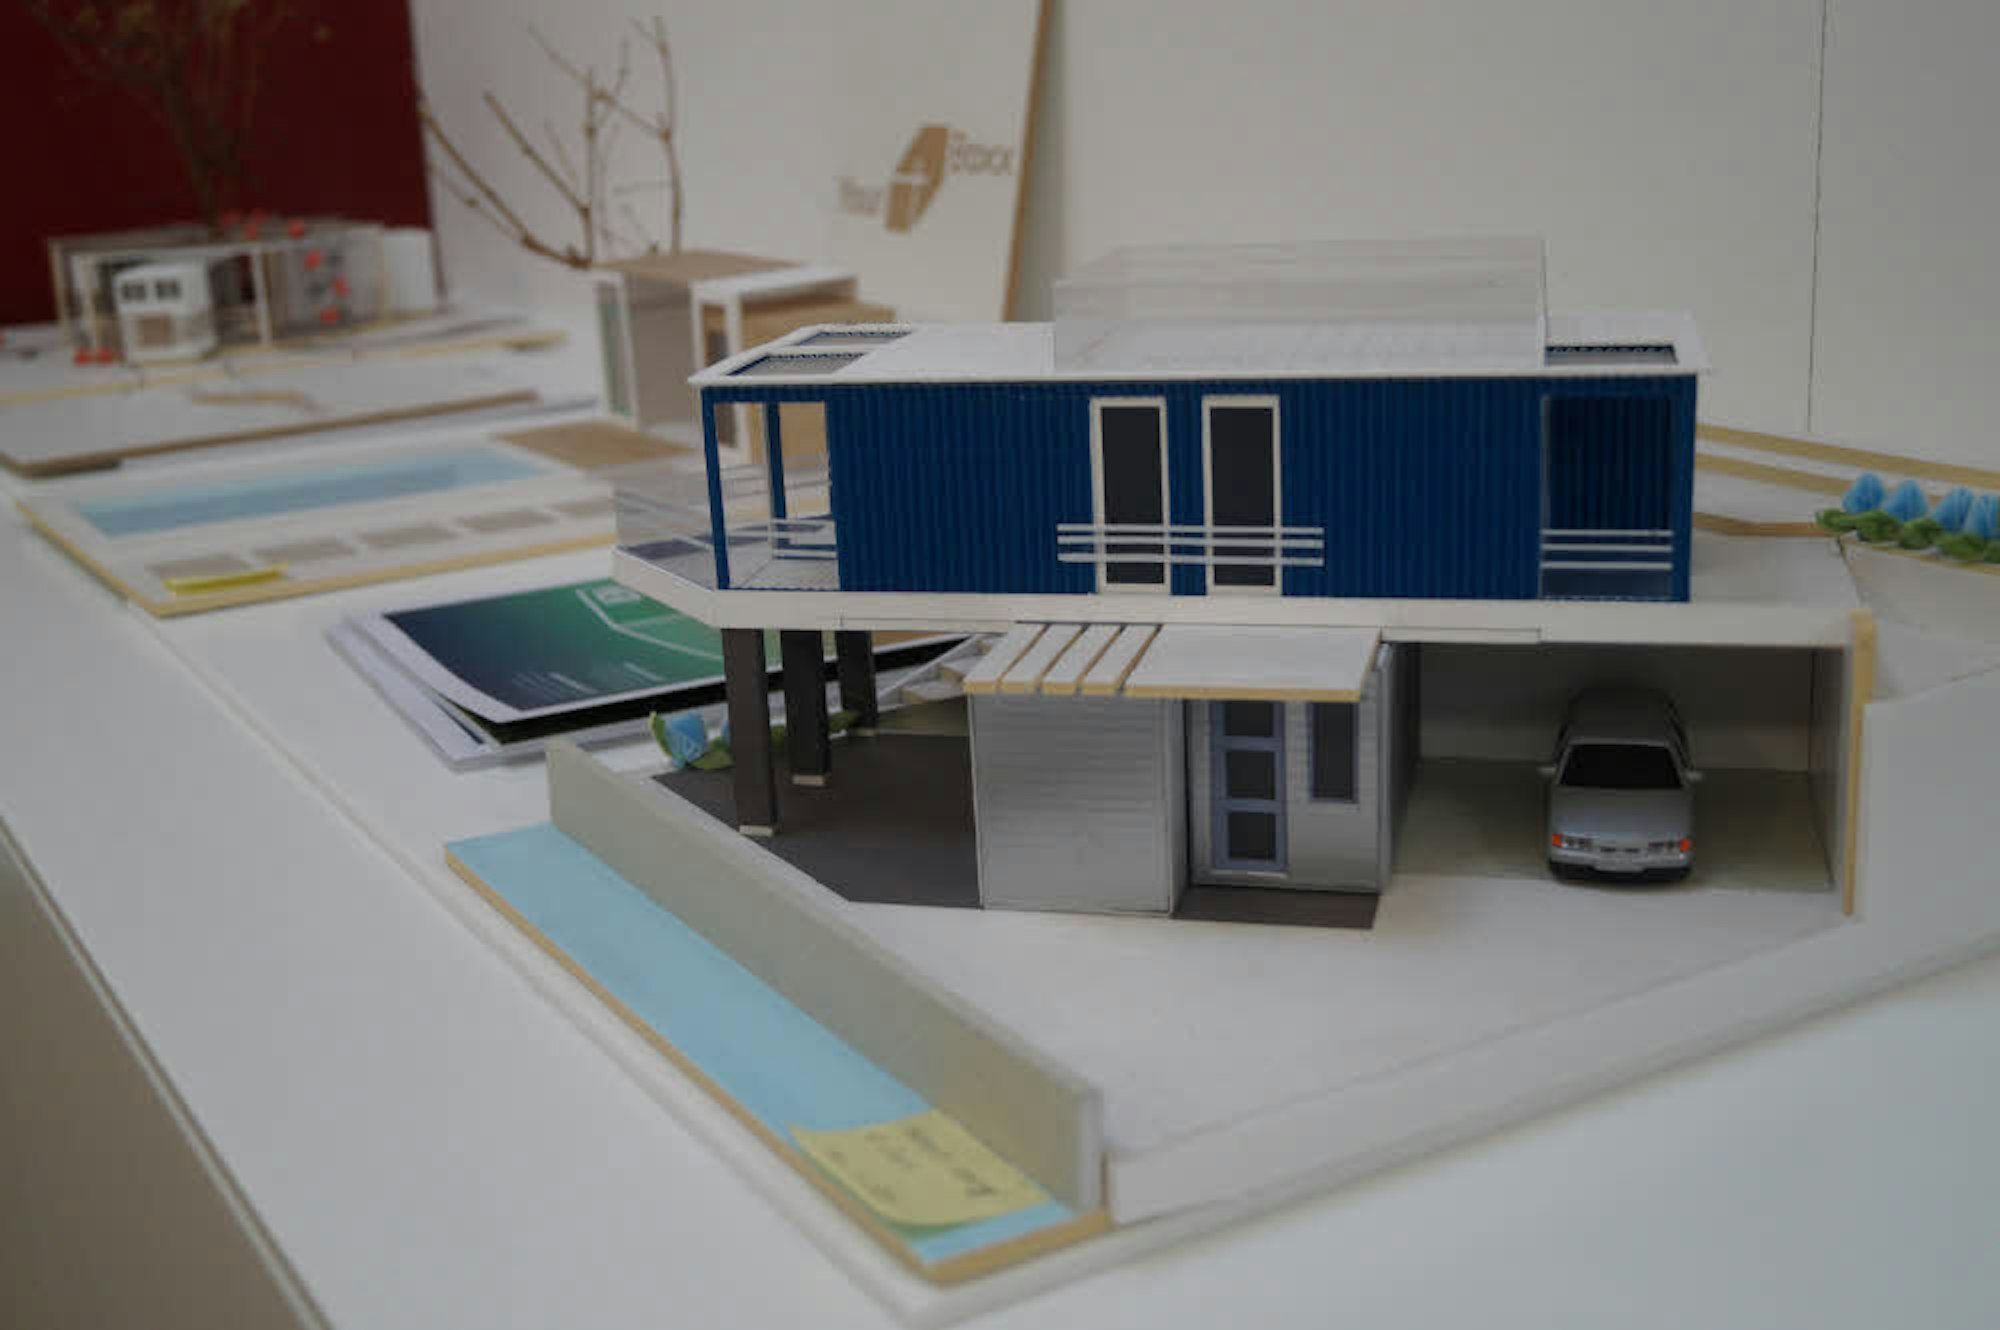 Die Wohncontainer können auch auf zwei Ebenen miteinander kombiniert werden, wie dieses Modell zeigt.